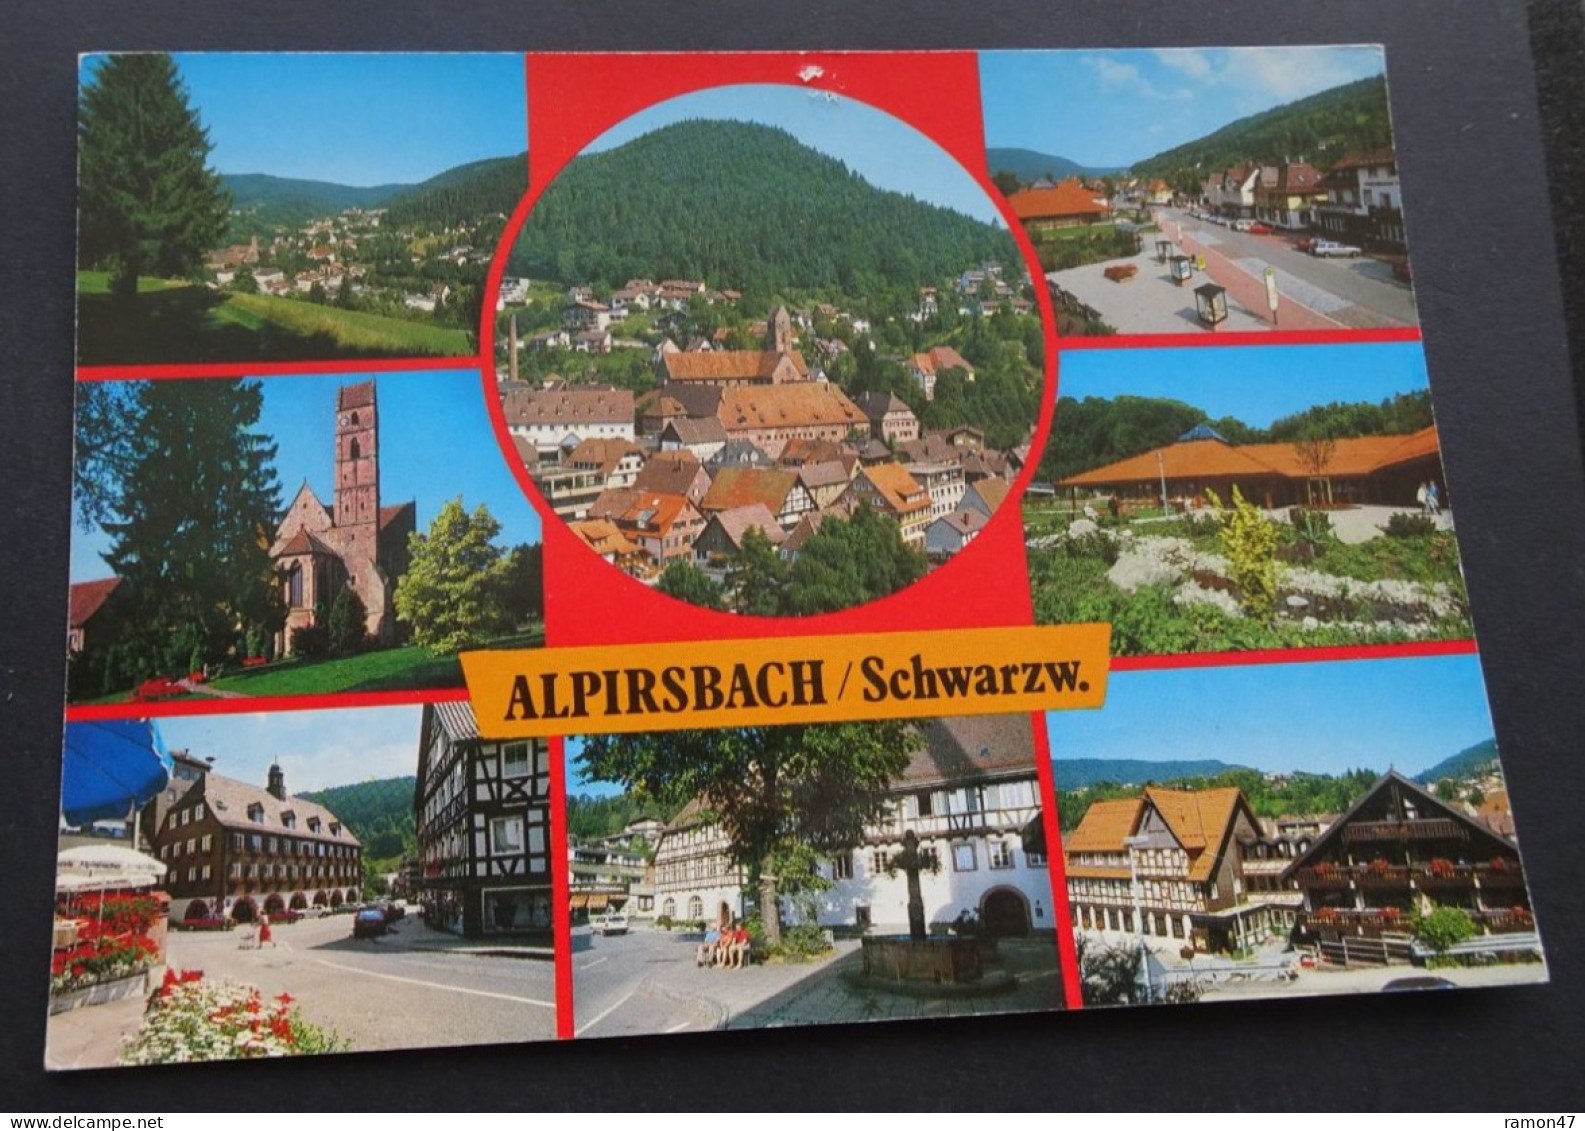 Alpirsbach/Schwarzw. - Herst. U. Verlag Schöning & Co + Gebrüder Schmidt, Lübeck - Alpirsbach